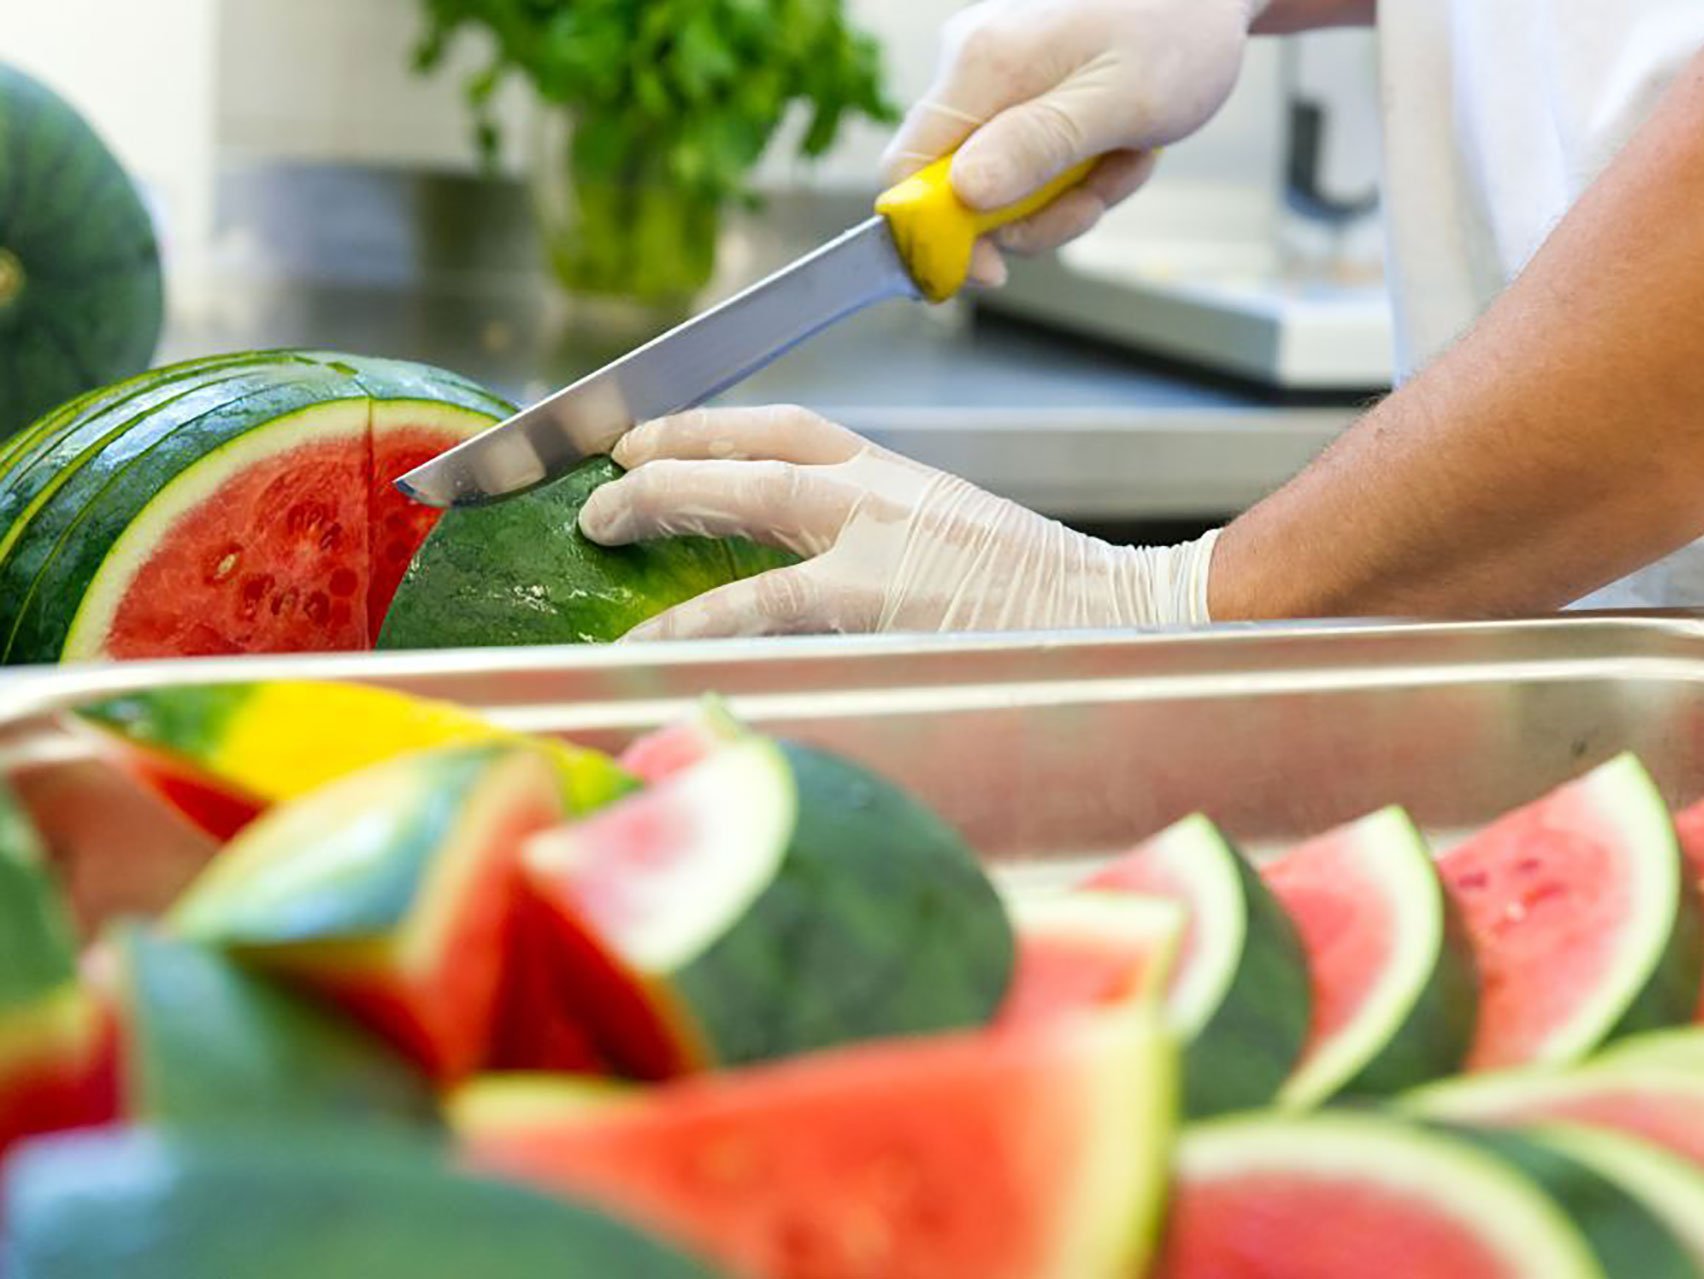 Nahaufnahme: Hände in Gummihandschuhen schneiden eine Melone in viele Stücke